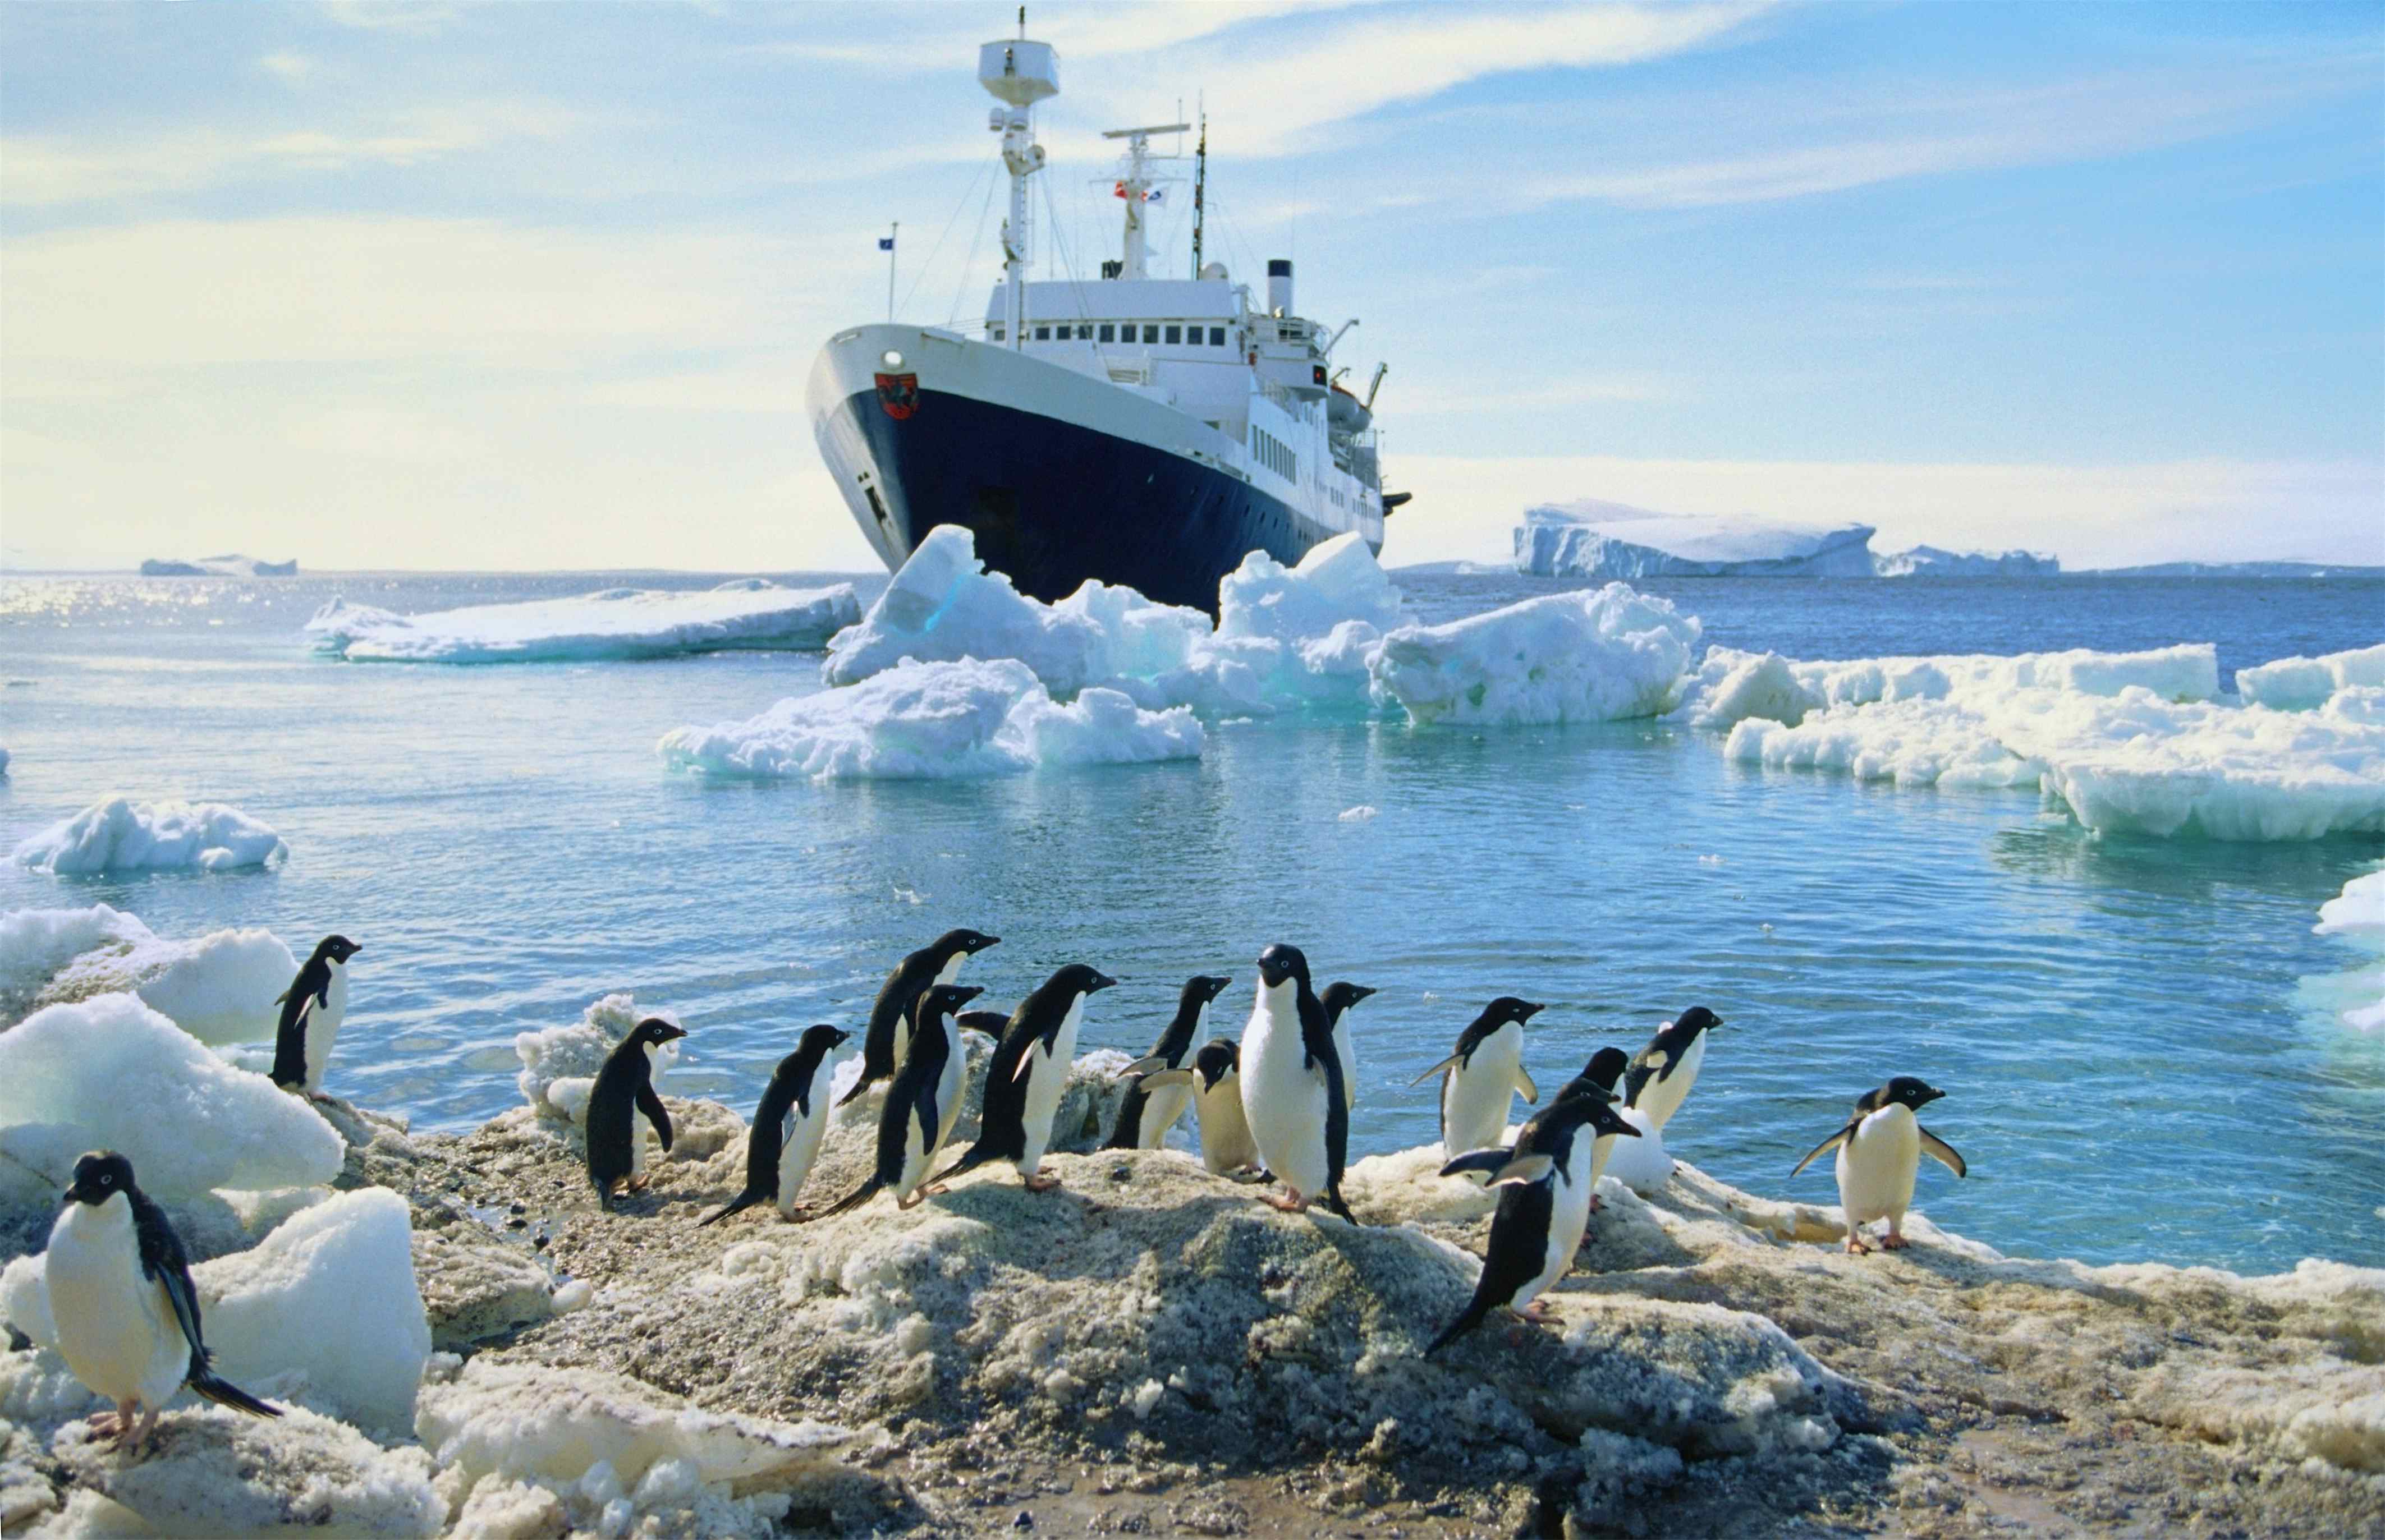 Южный океан природа. Ушуайя Антарктида. Арктика Антарктика Антарктида. Антарктида Кейптаун. Северный Ледовитый океан и Антарктида.